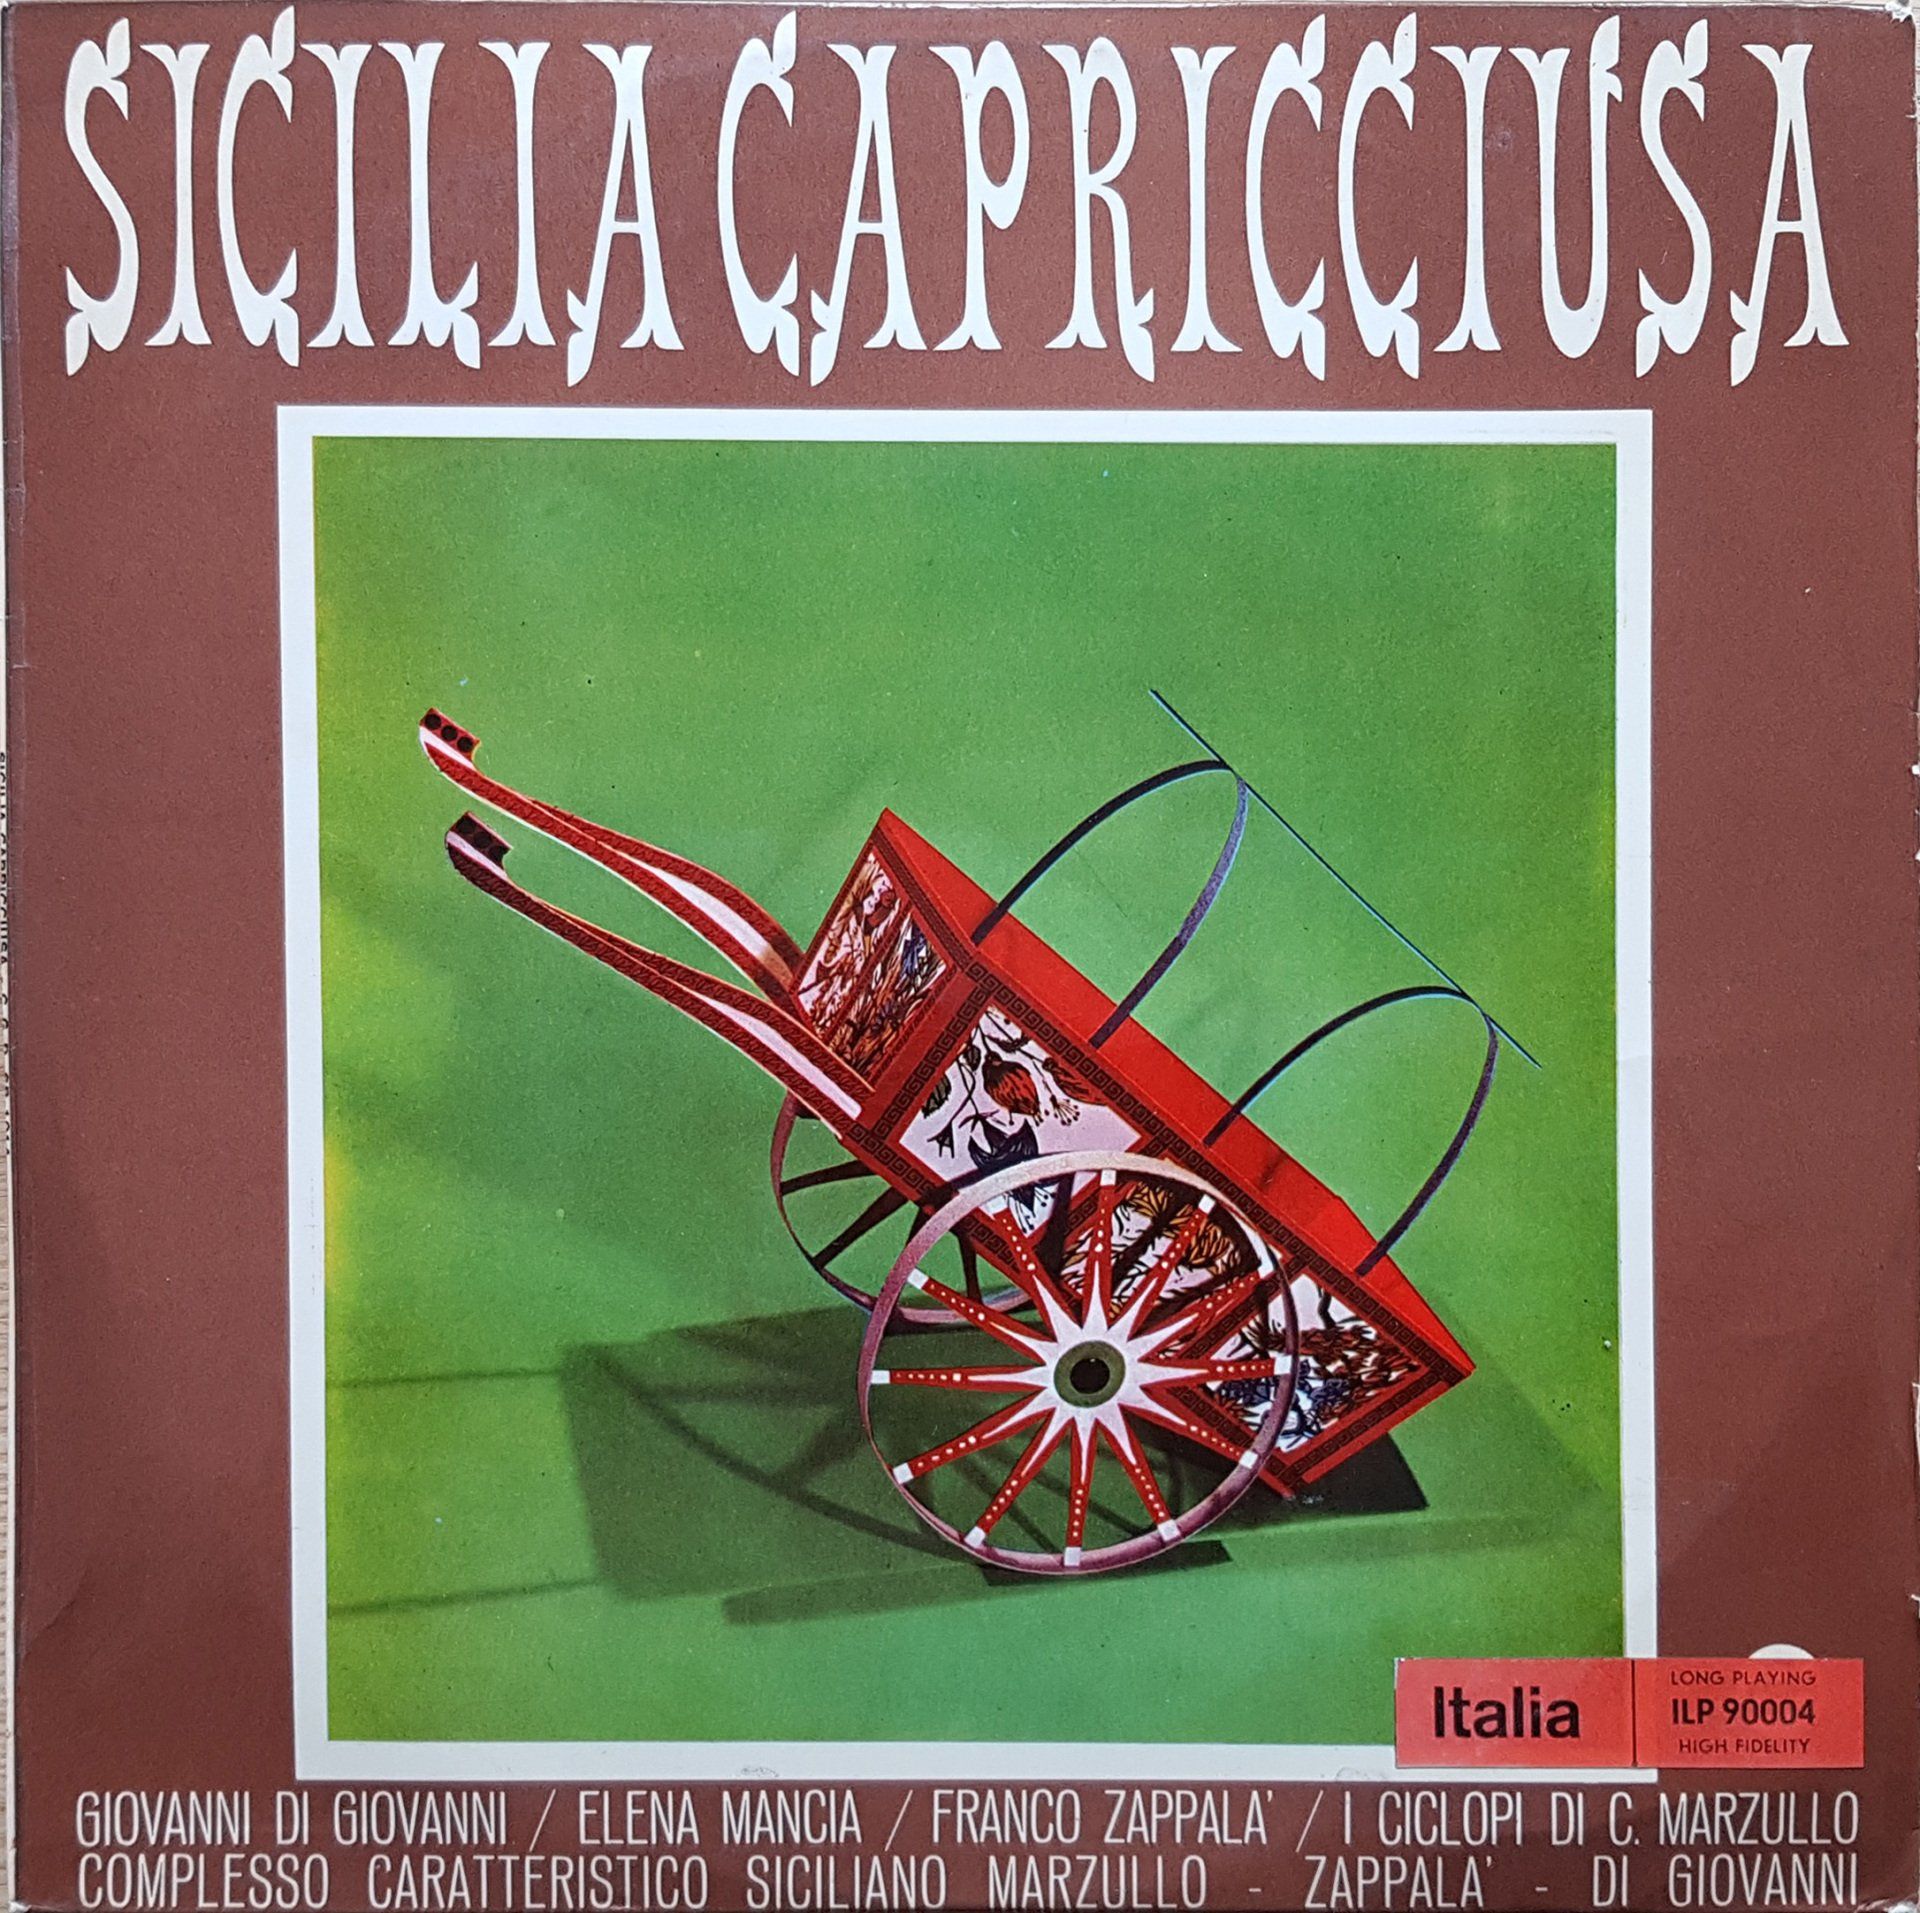 Sicilia capricciusa Franco Zappala